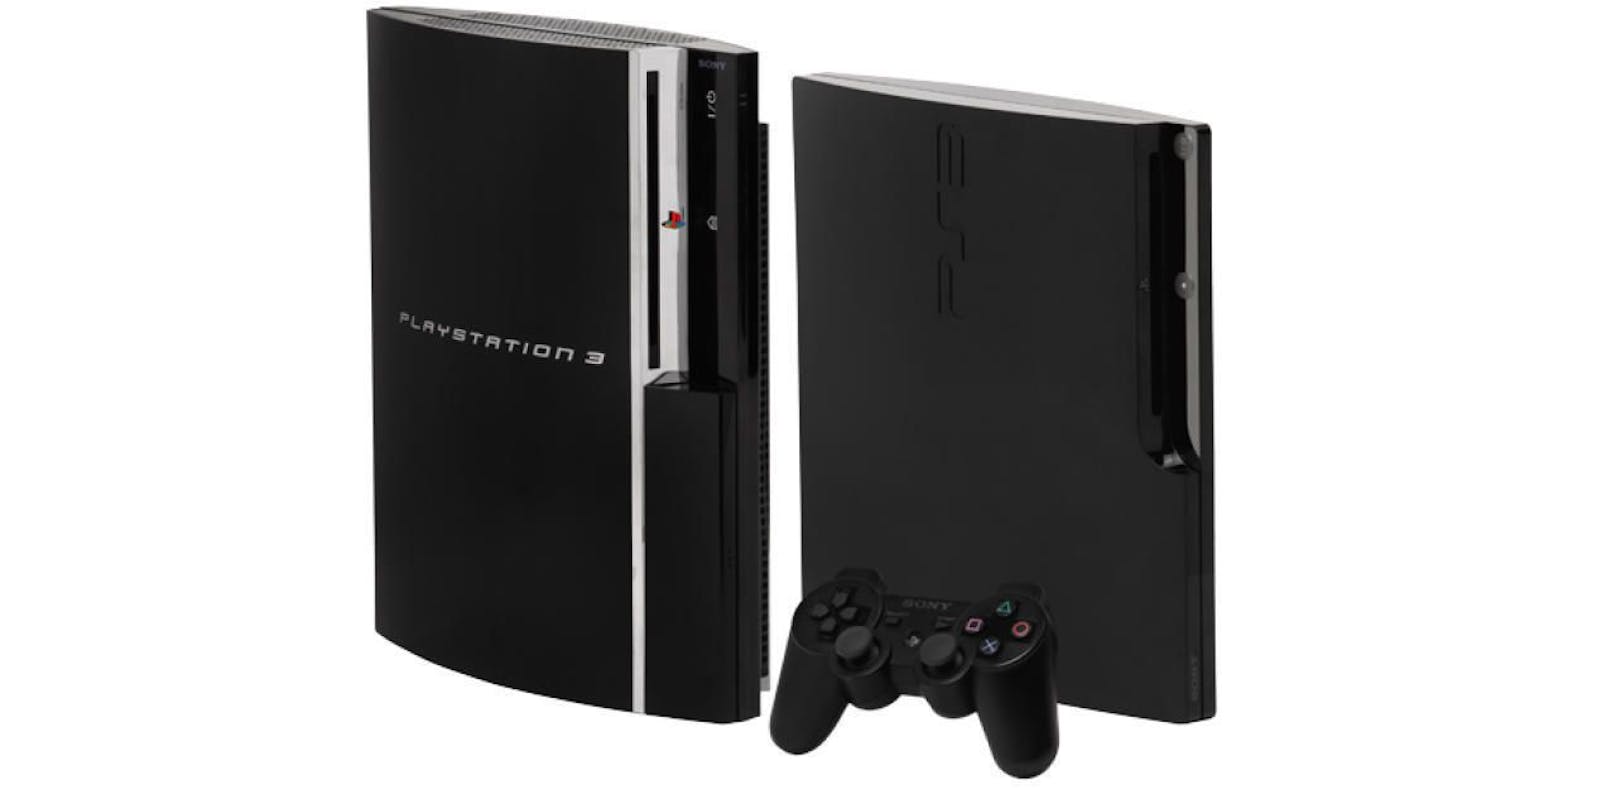 Sony stellt die Produktion der PlayStation 3 ein